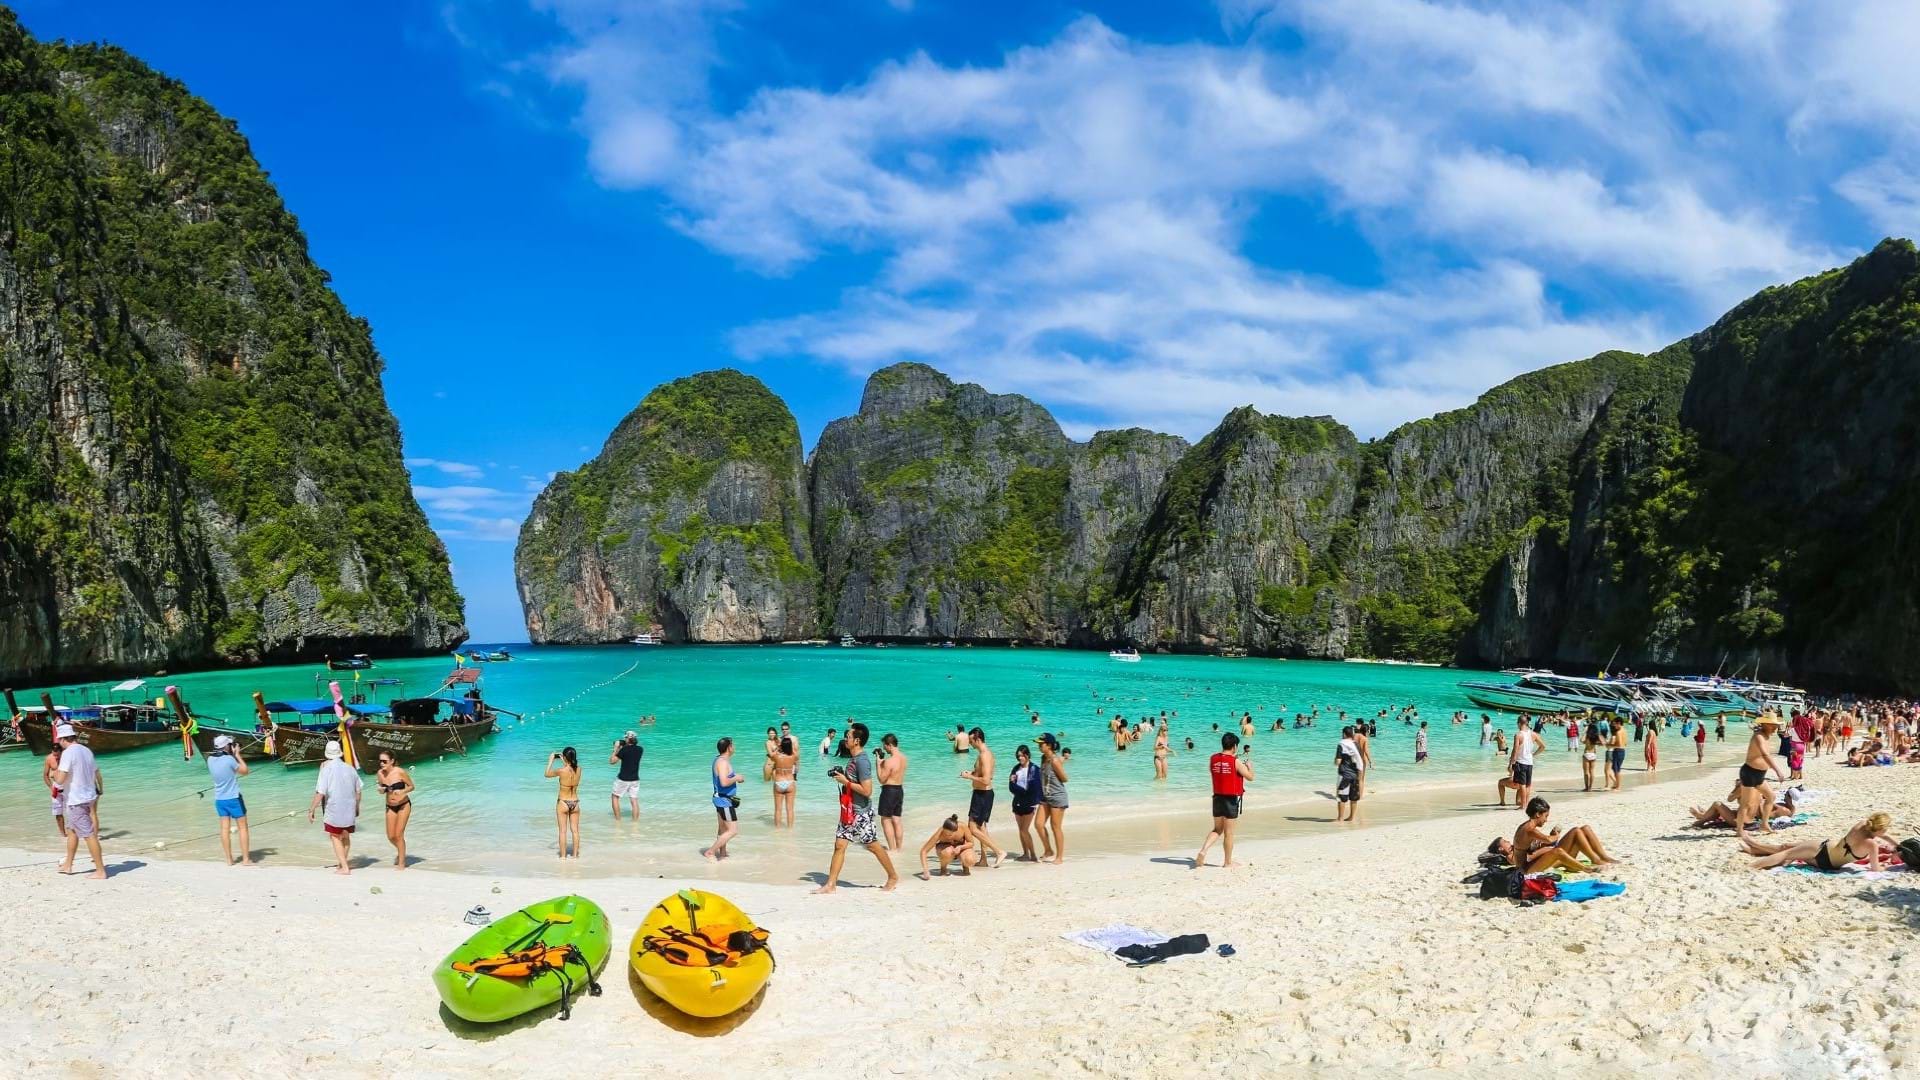 Tajland Puket, najpopularnija destinacija ove prelepe zemlje.